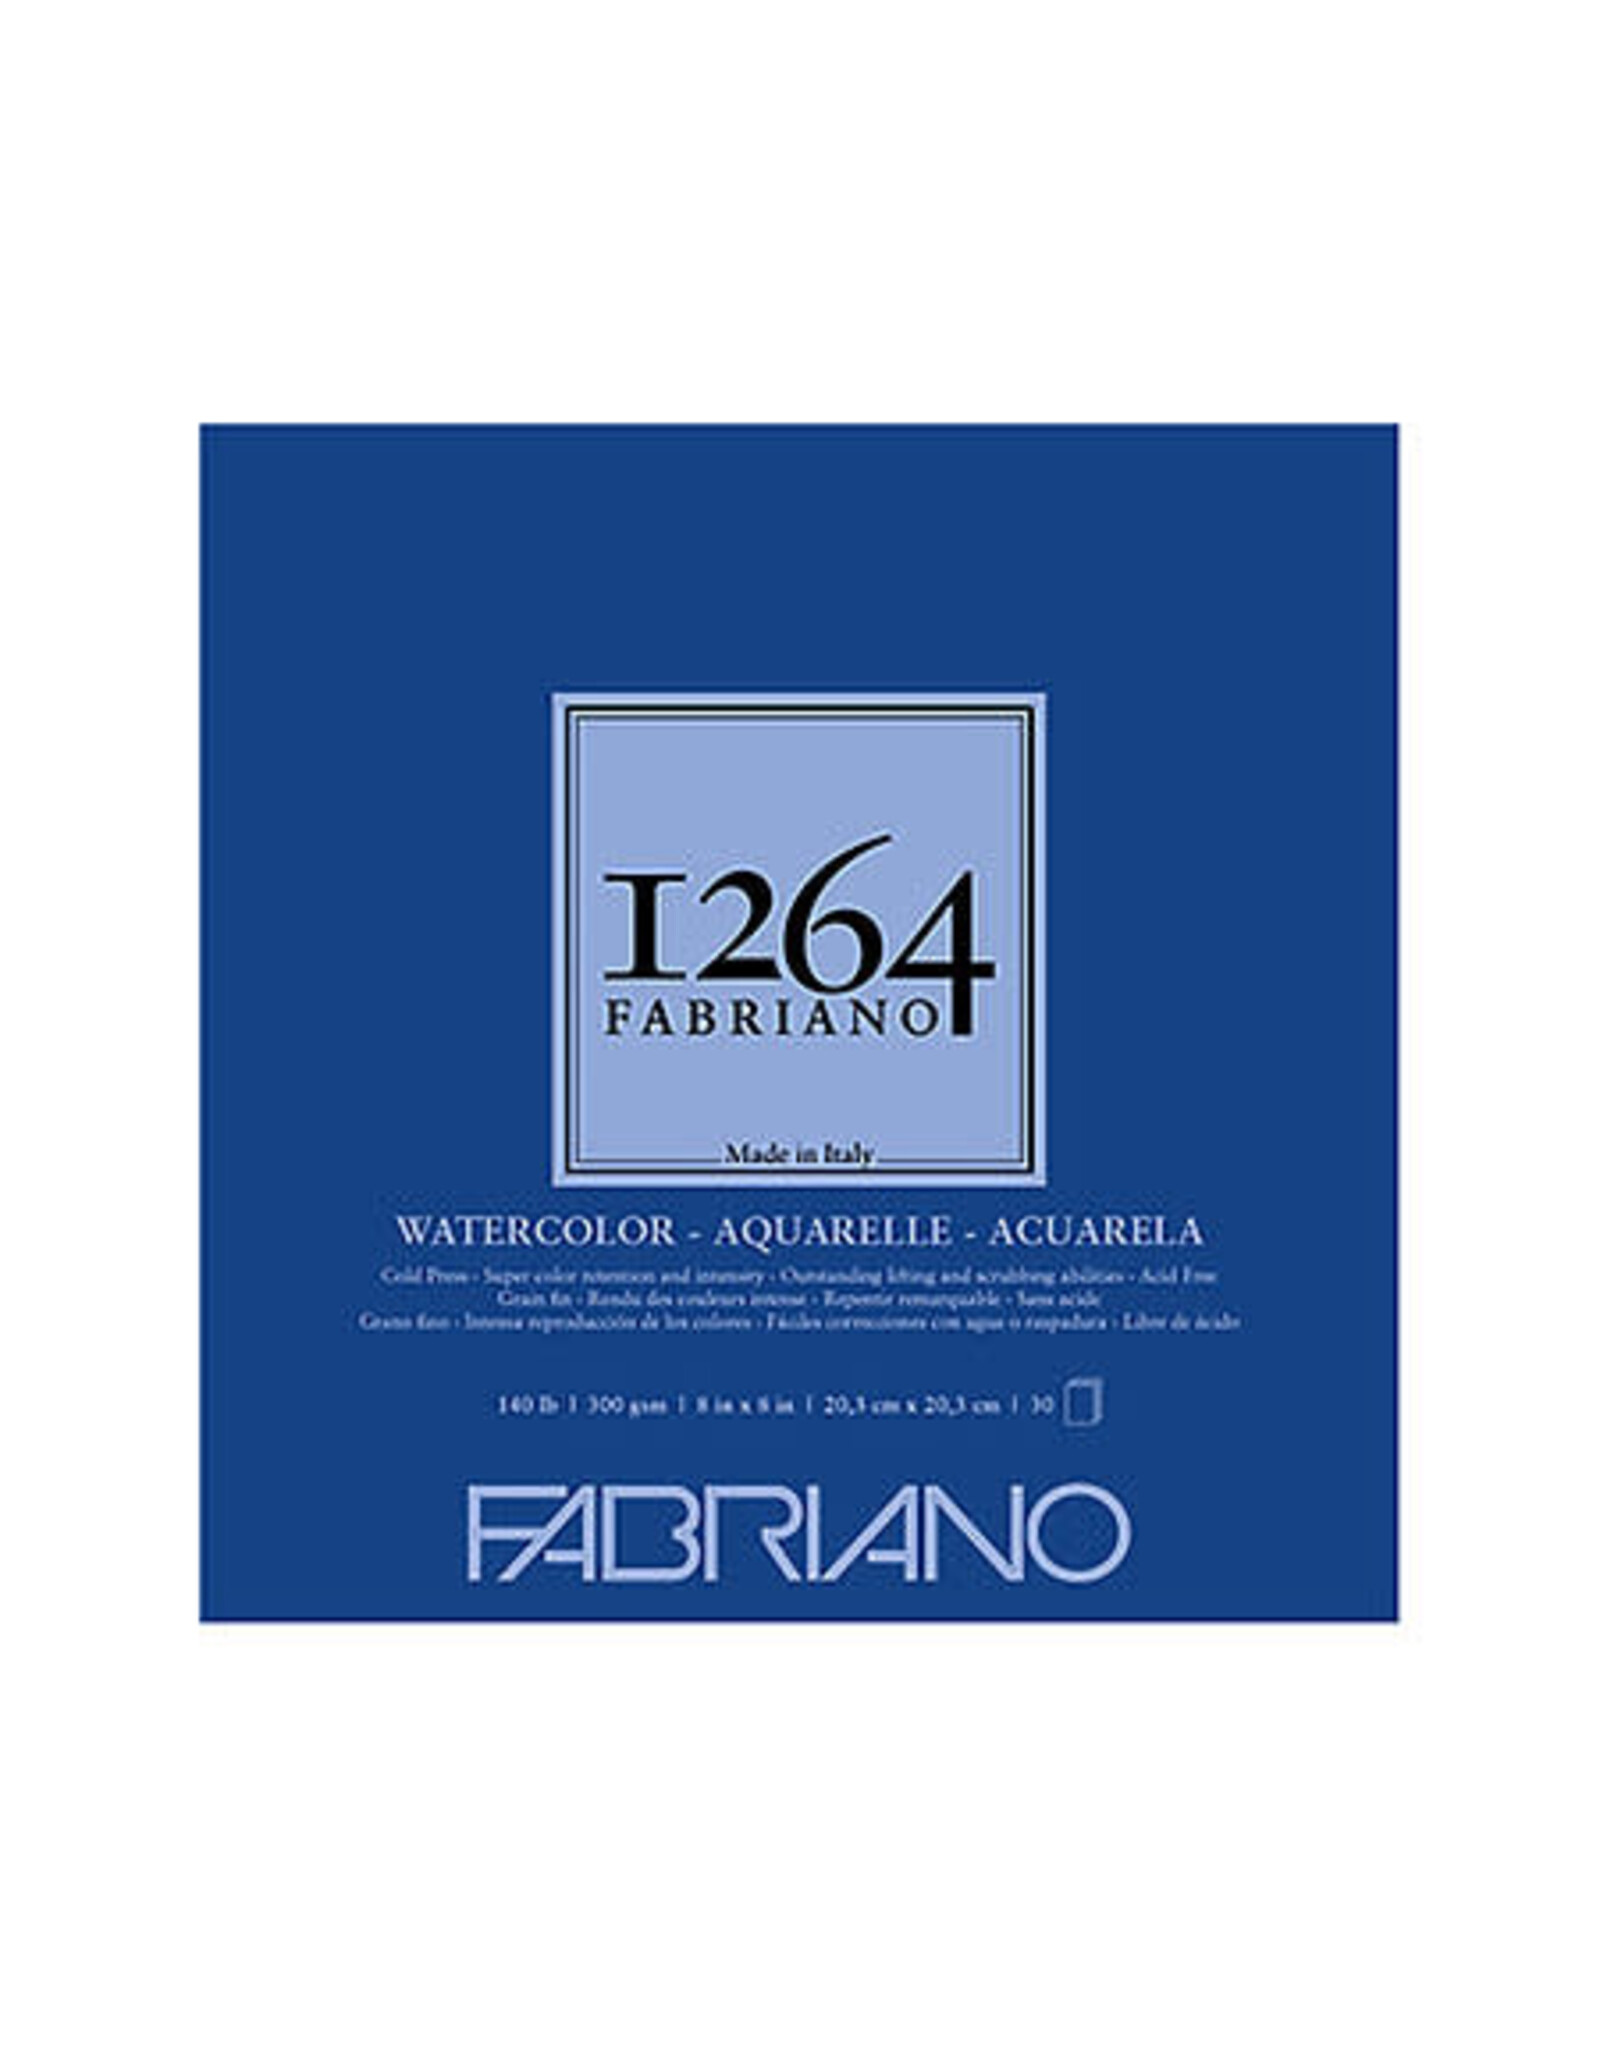 FABRIANO FABRIANO 1264 COLD PRESS 8X8 WATERCOLOR PAD 30 SHEETS